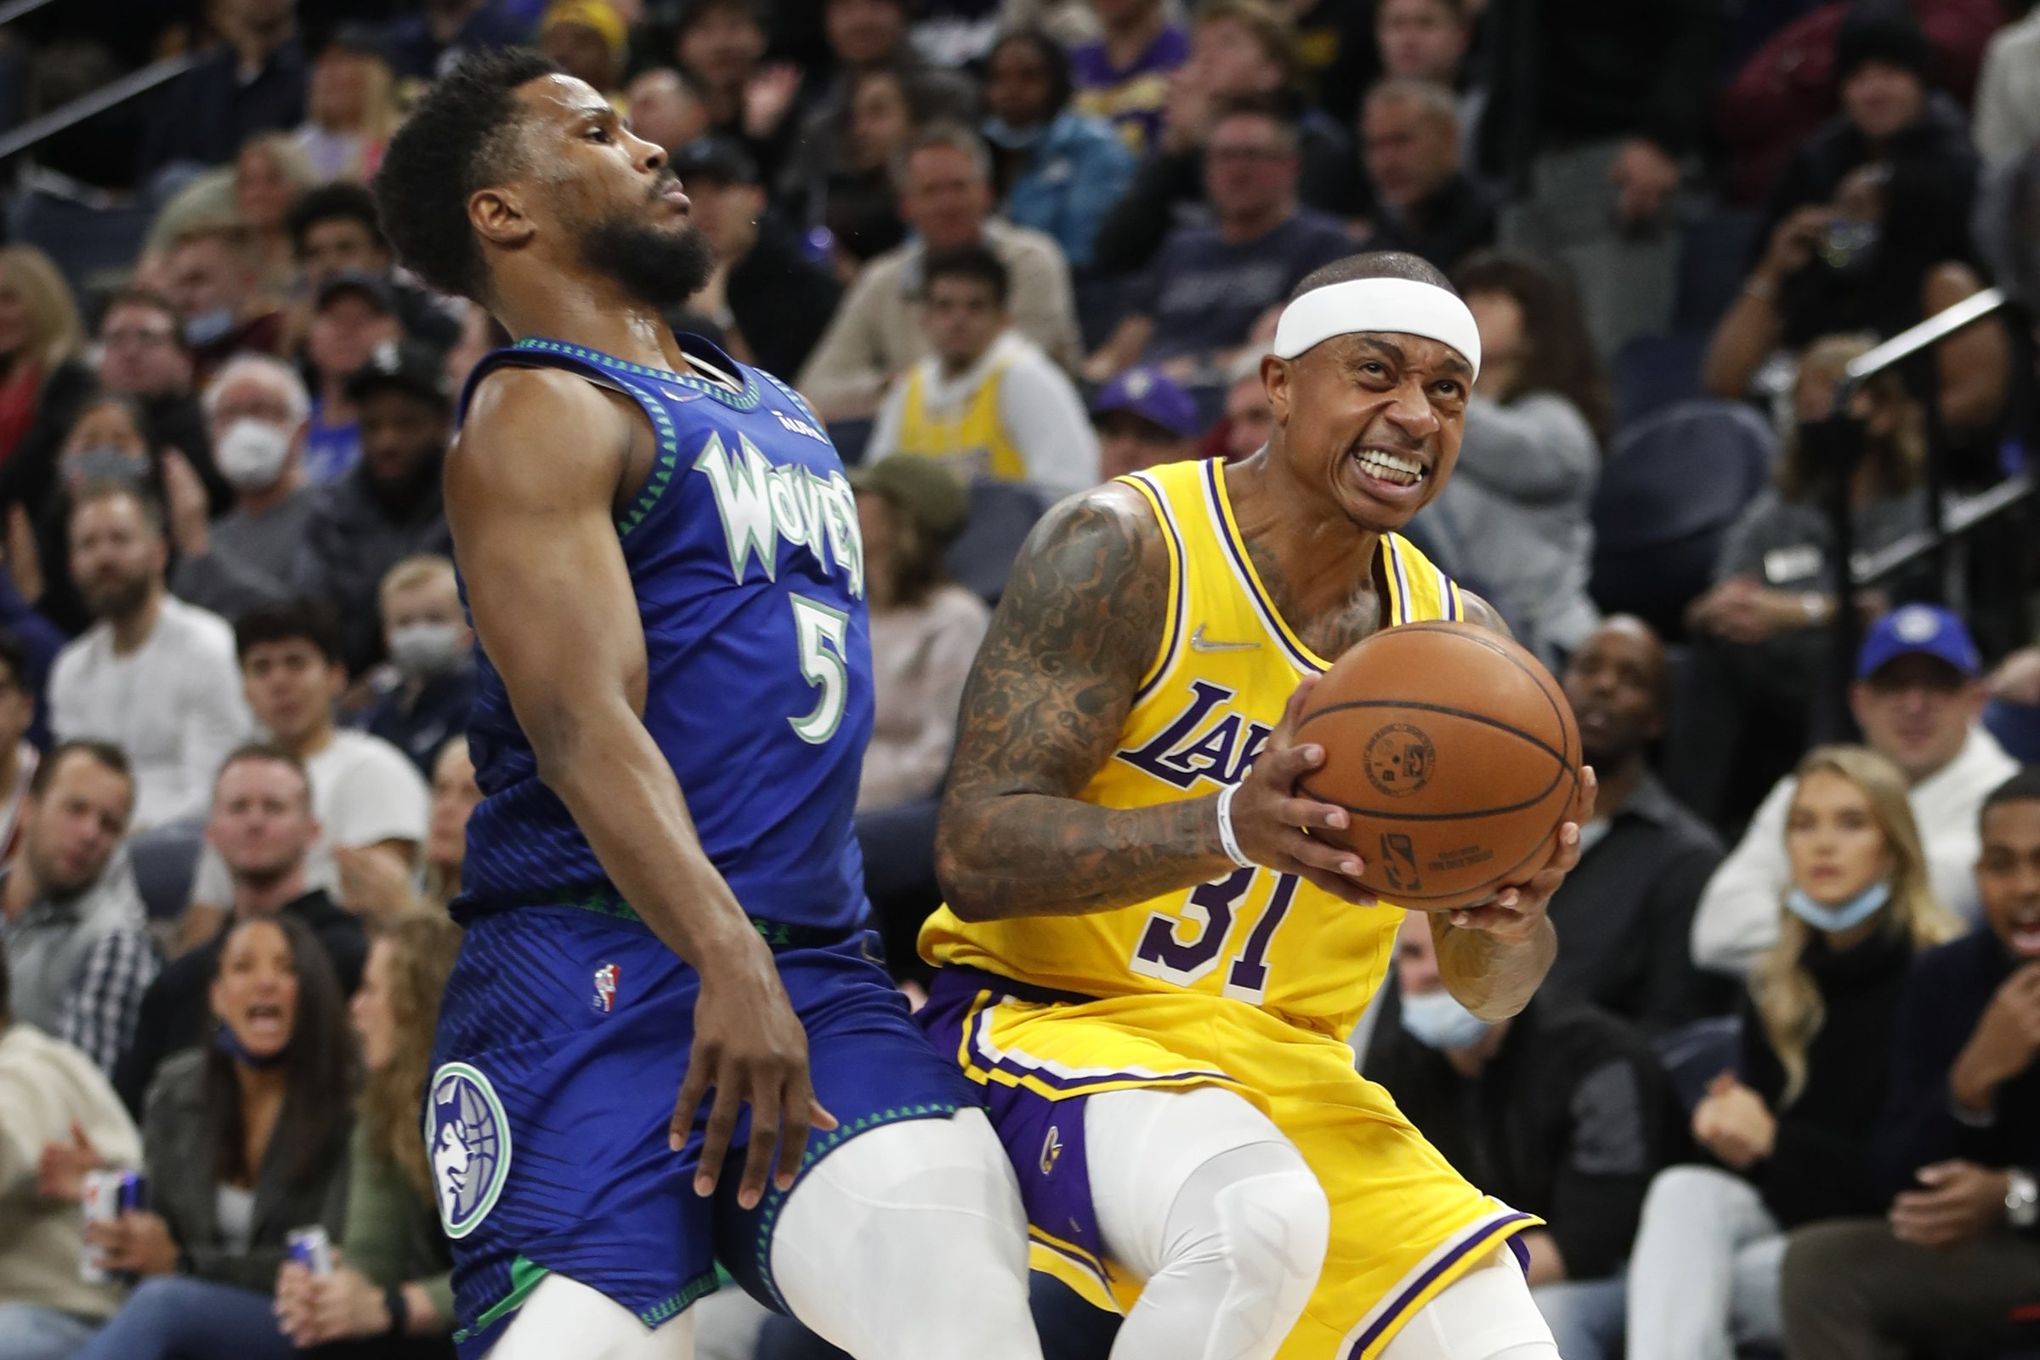 NBA finals is Lakers-Celtics, Part 12 - The San Diego Union-Tribune